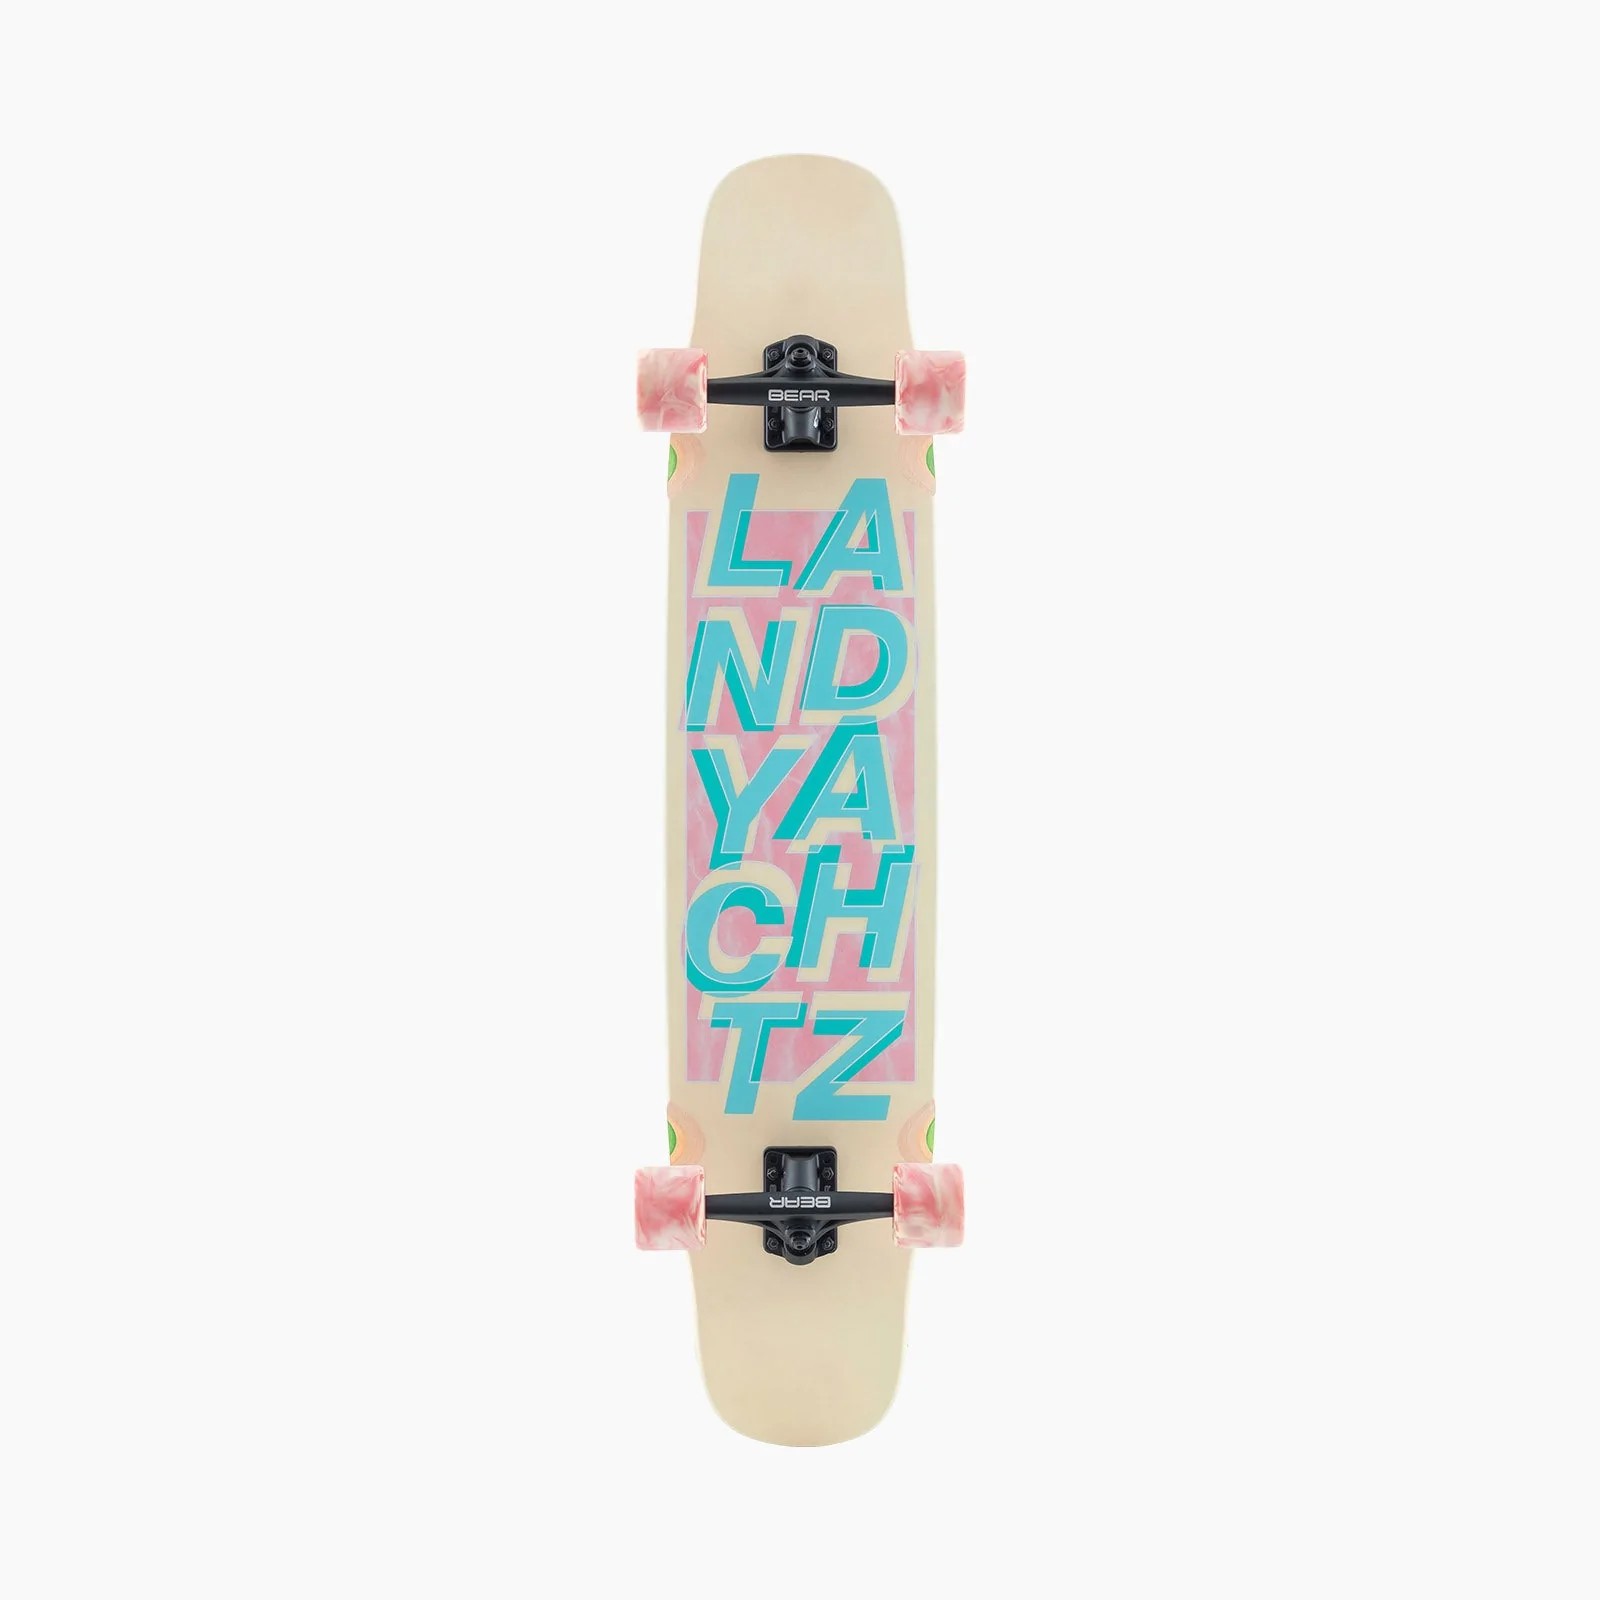 Top Mount скейт Landyachtz Tony Danza Logo